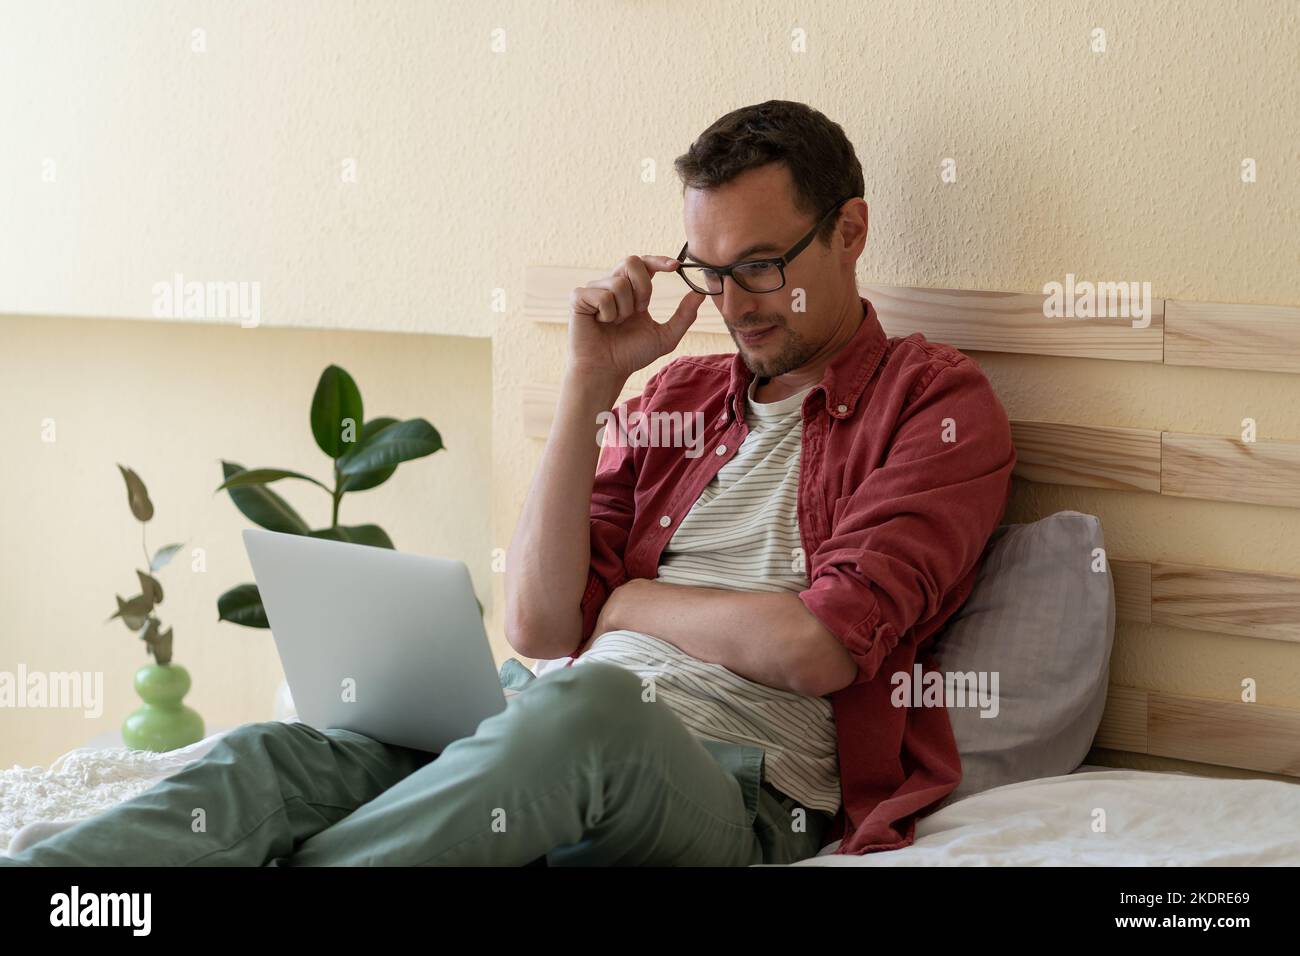 L'uomo caucasico concentrato si siede sul letto nella camera dell'hotel leggendo le notizie via internet o controllando la posta elettronica Foto Stock